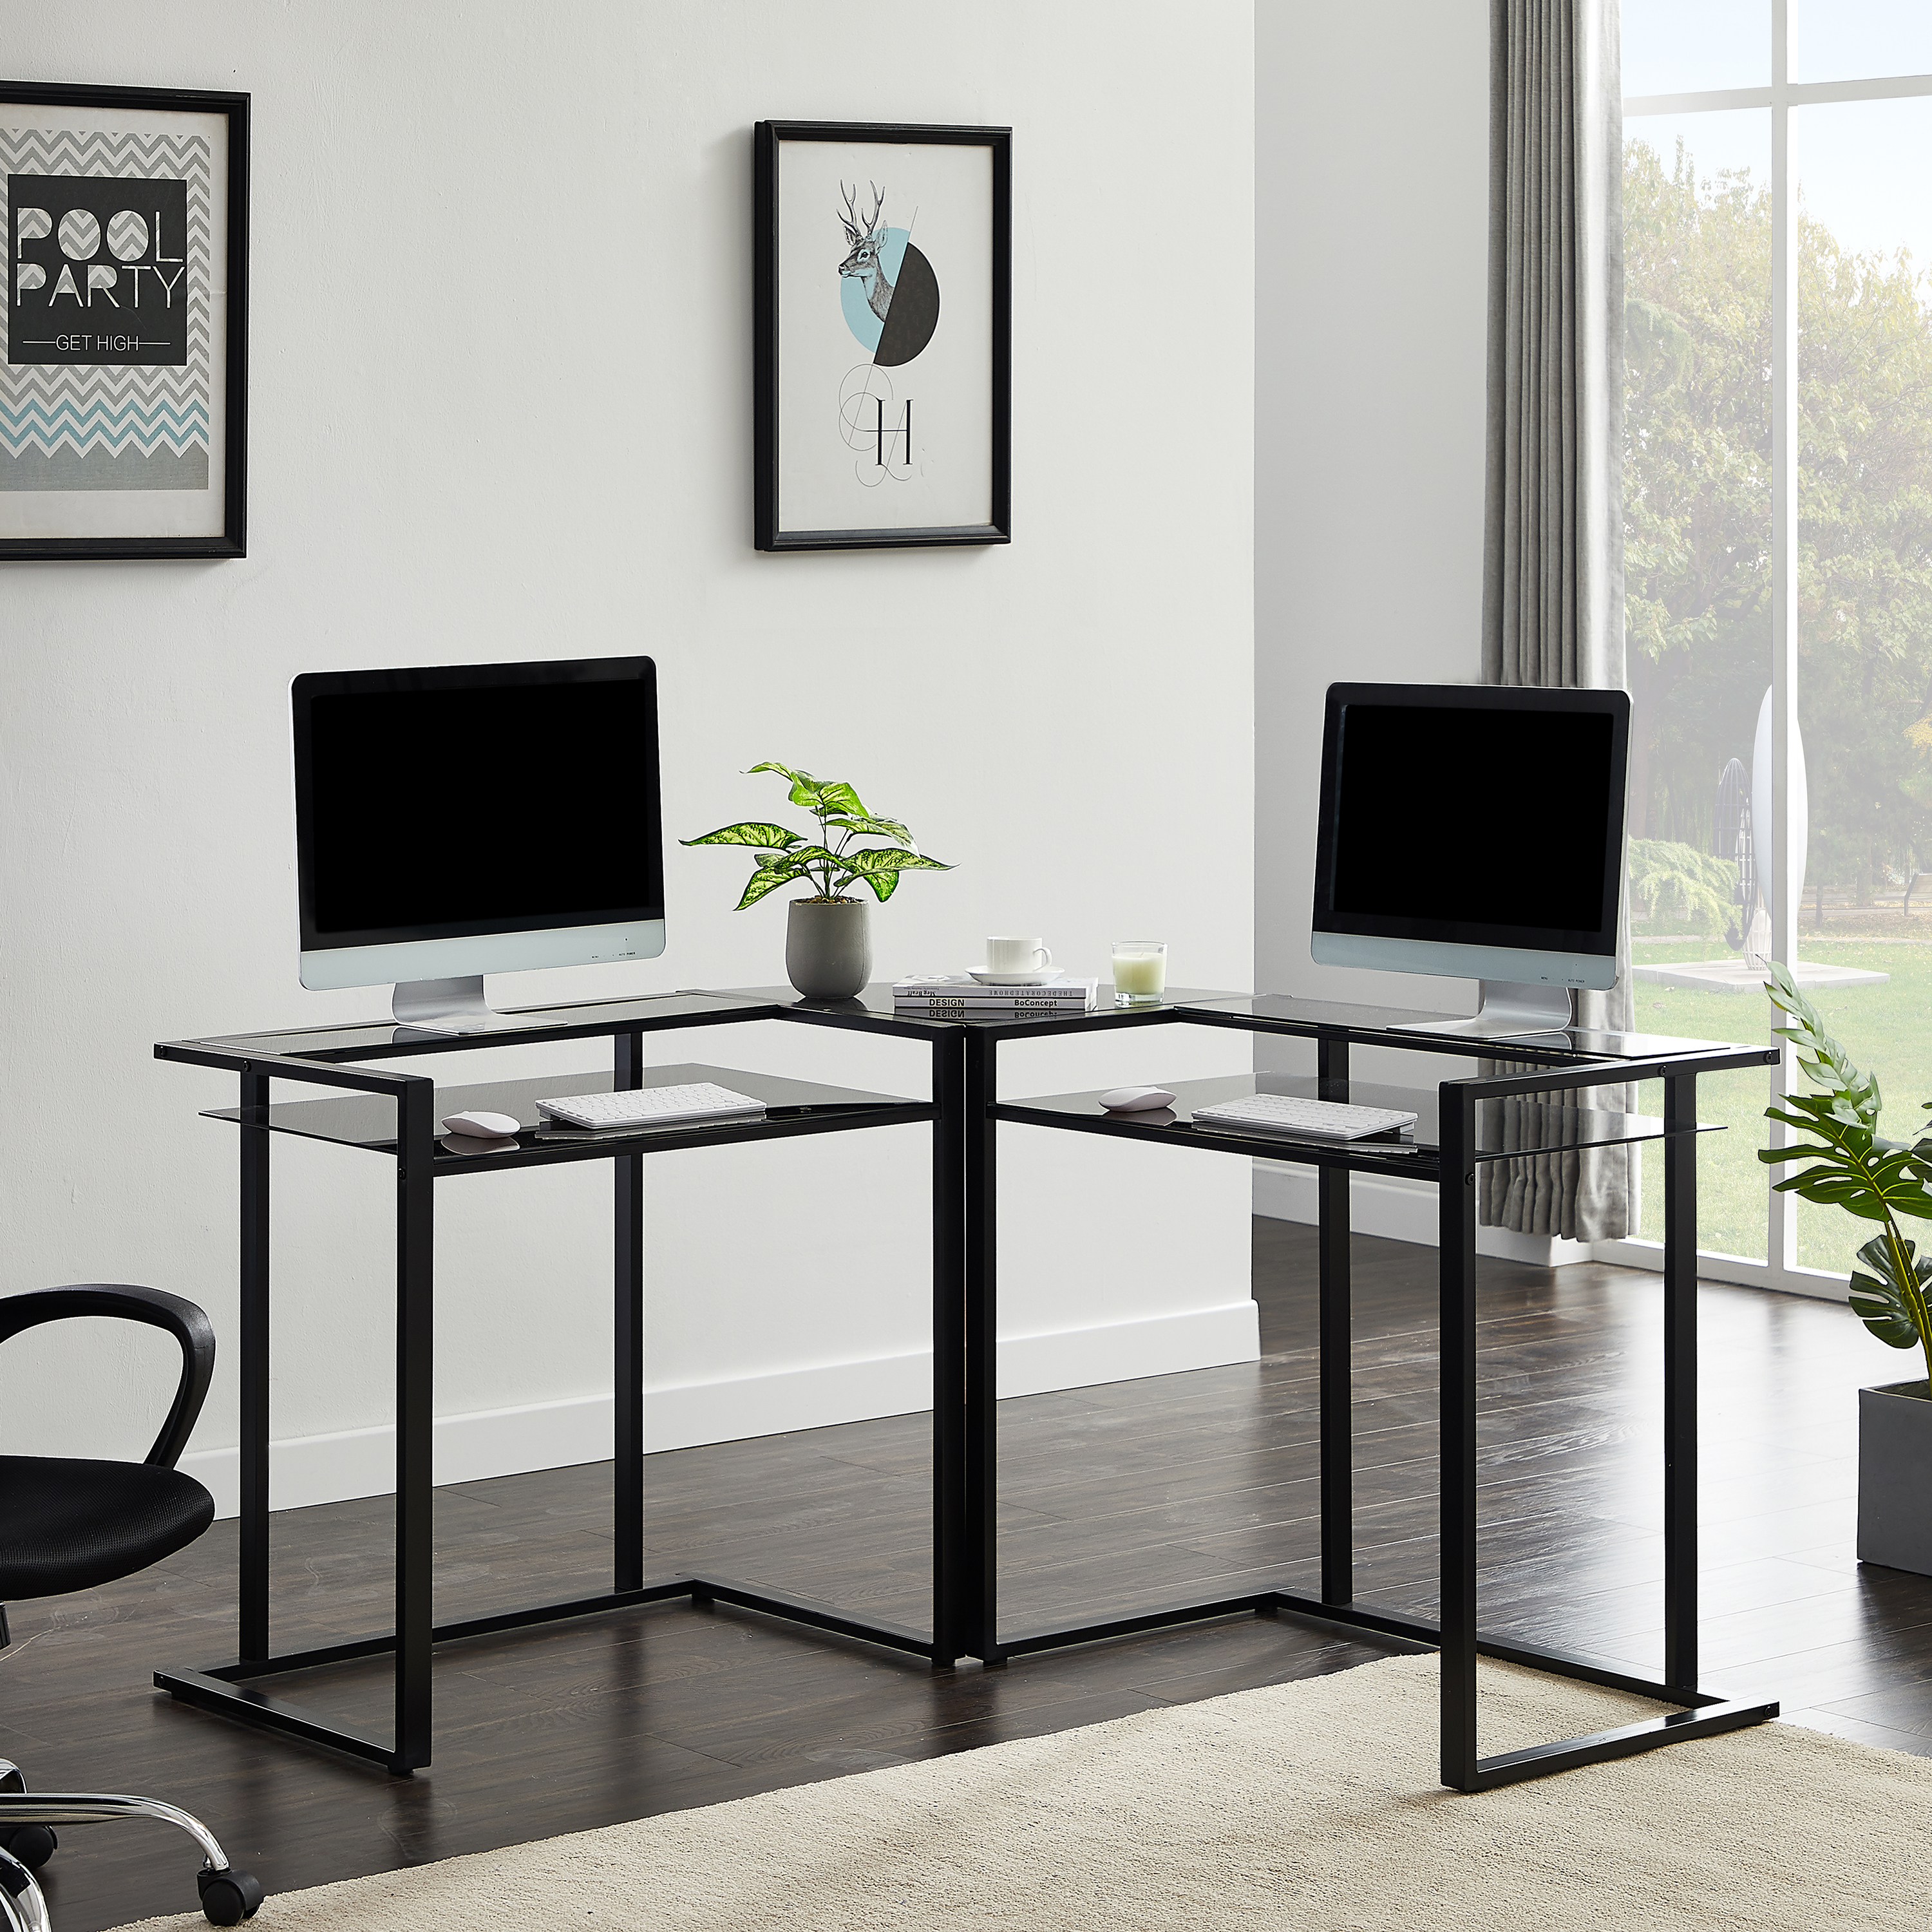 Details about   Home Office Corner Desk Computer Table Study Desk Student Writing Desktop Desk 